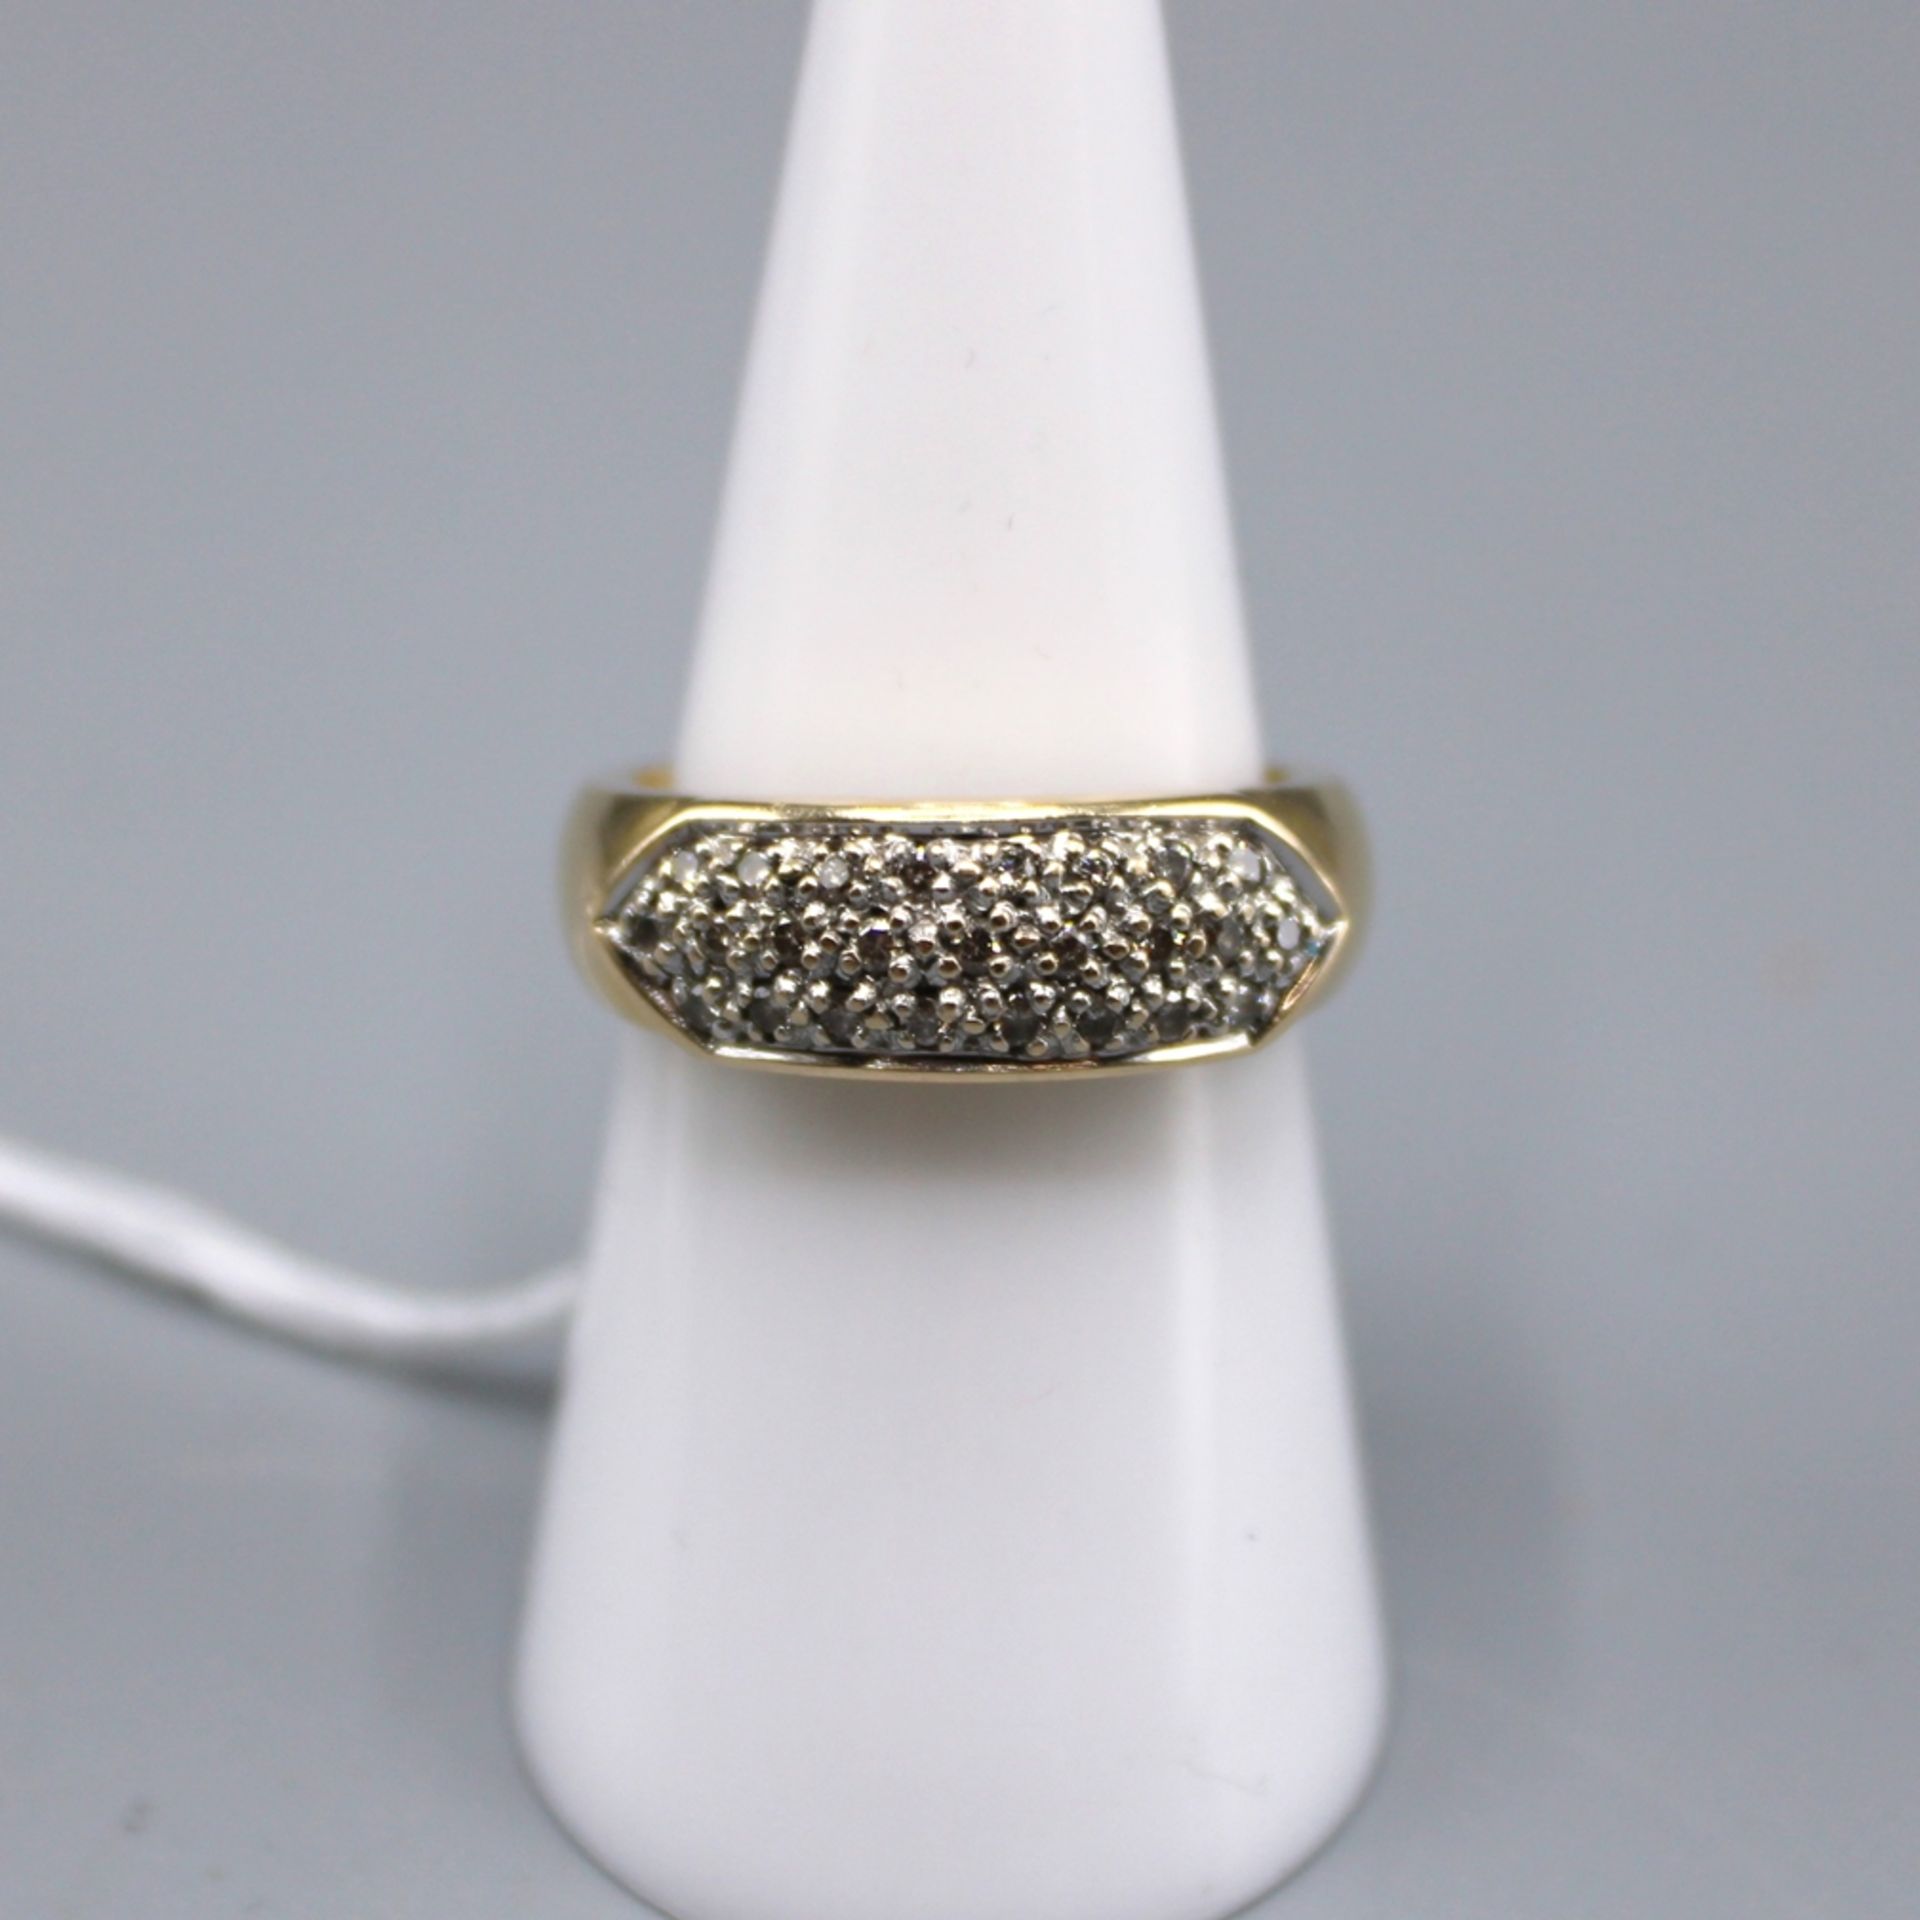 Diamantring 585 Gold, m. vielen kleinen Diamanten besetzt, Ring Ø ca. 17 mm, 5,4 g